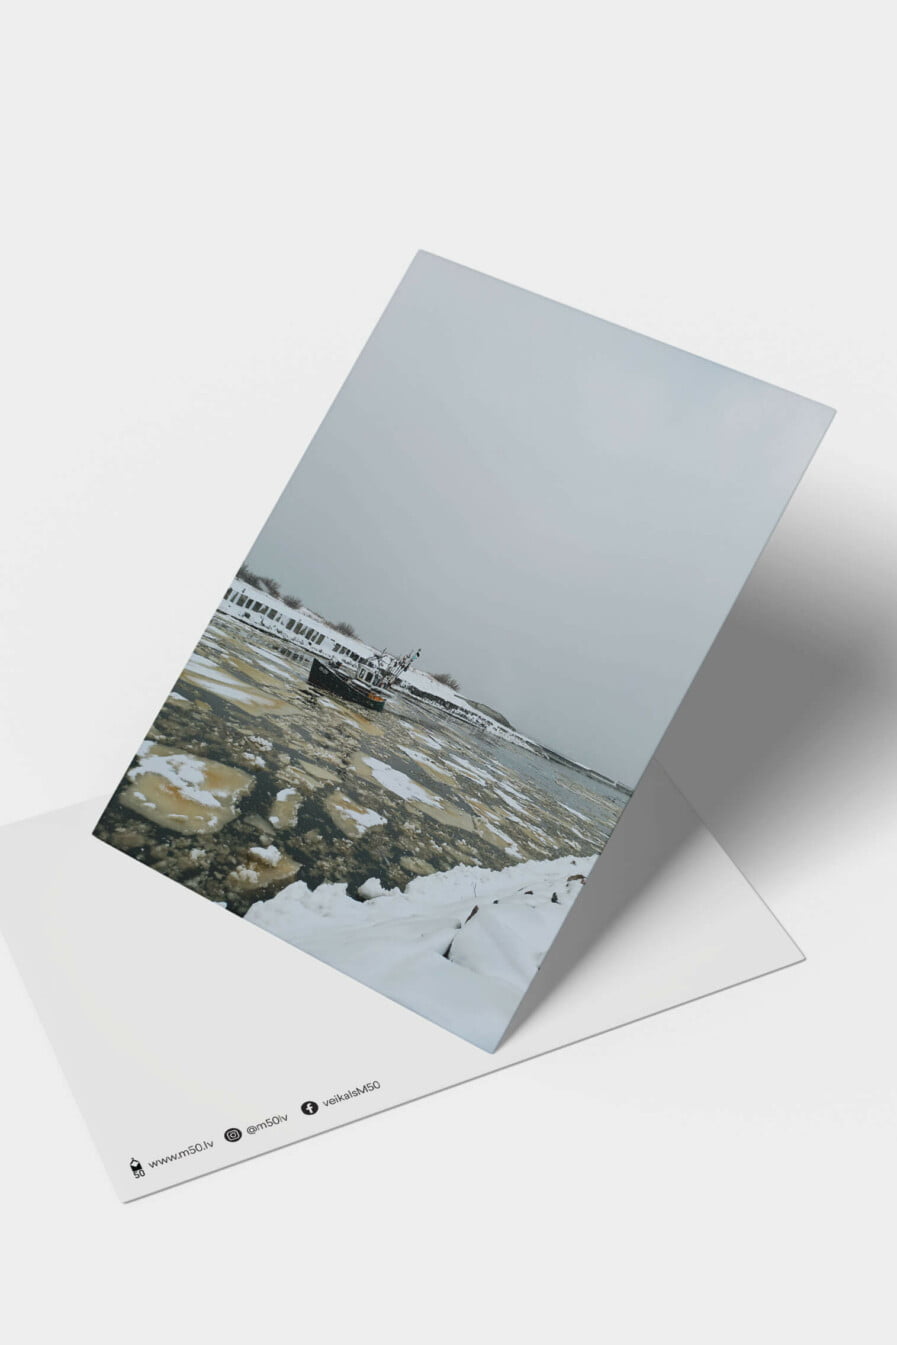 Līva Liepiņa, Pāvilosta m50 pastkarte jūra ziema